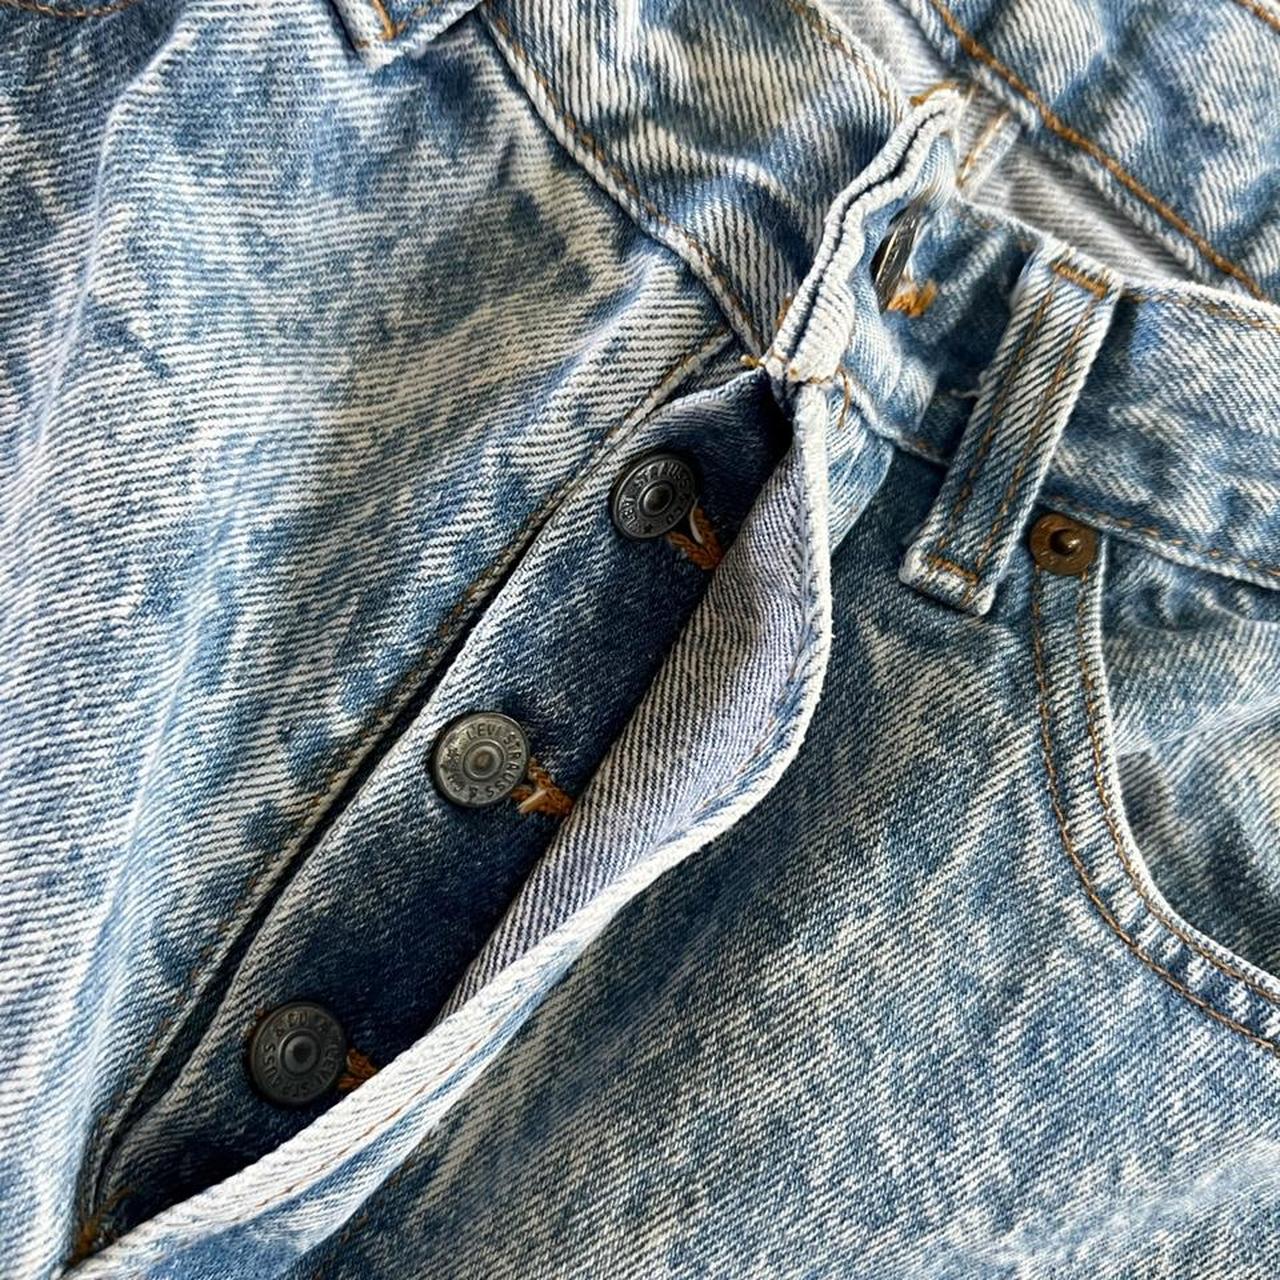 Vintage Levi’s 501 stonewashed denim jeans! Great... - Depop